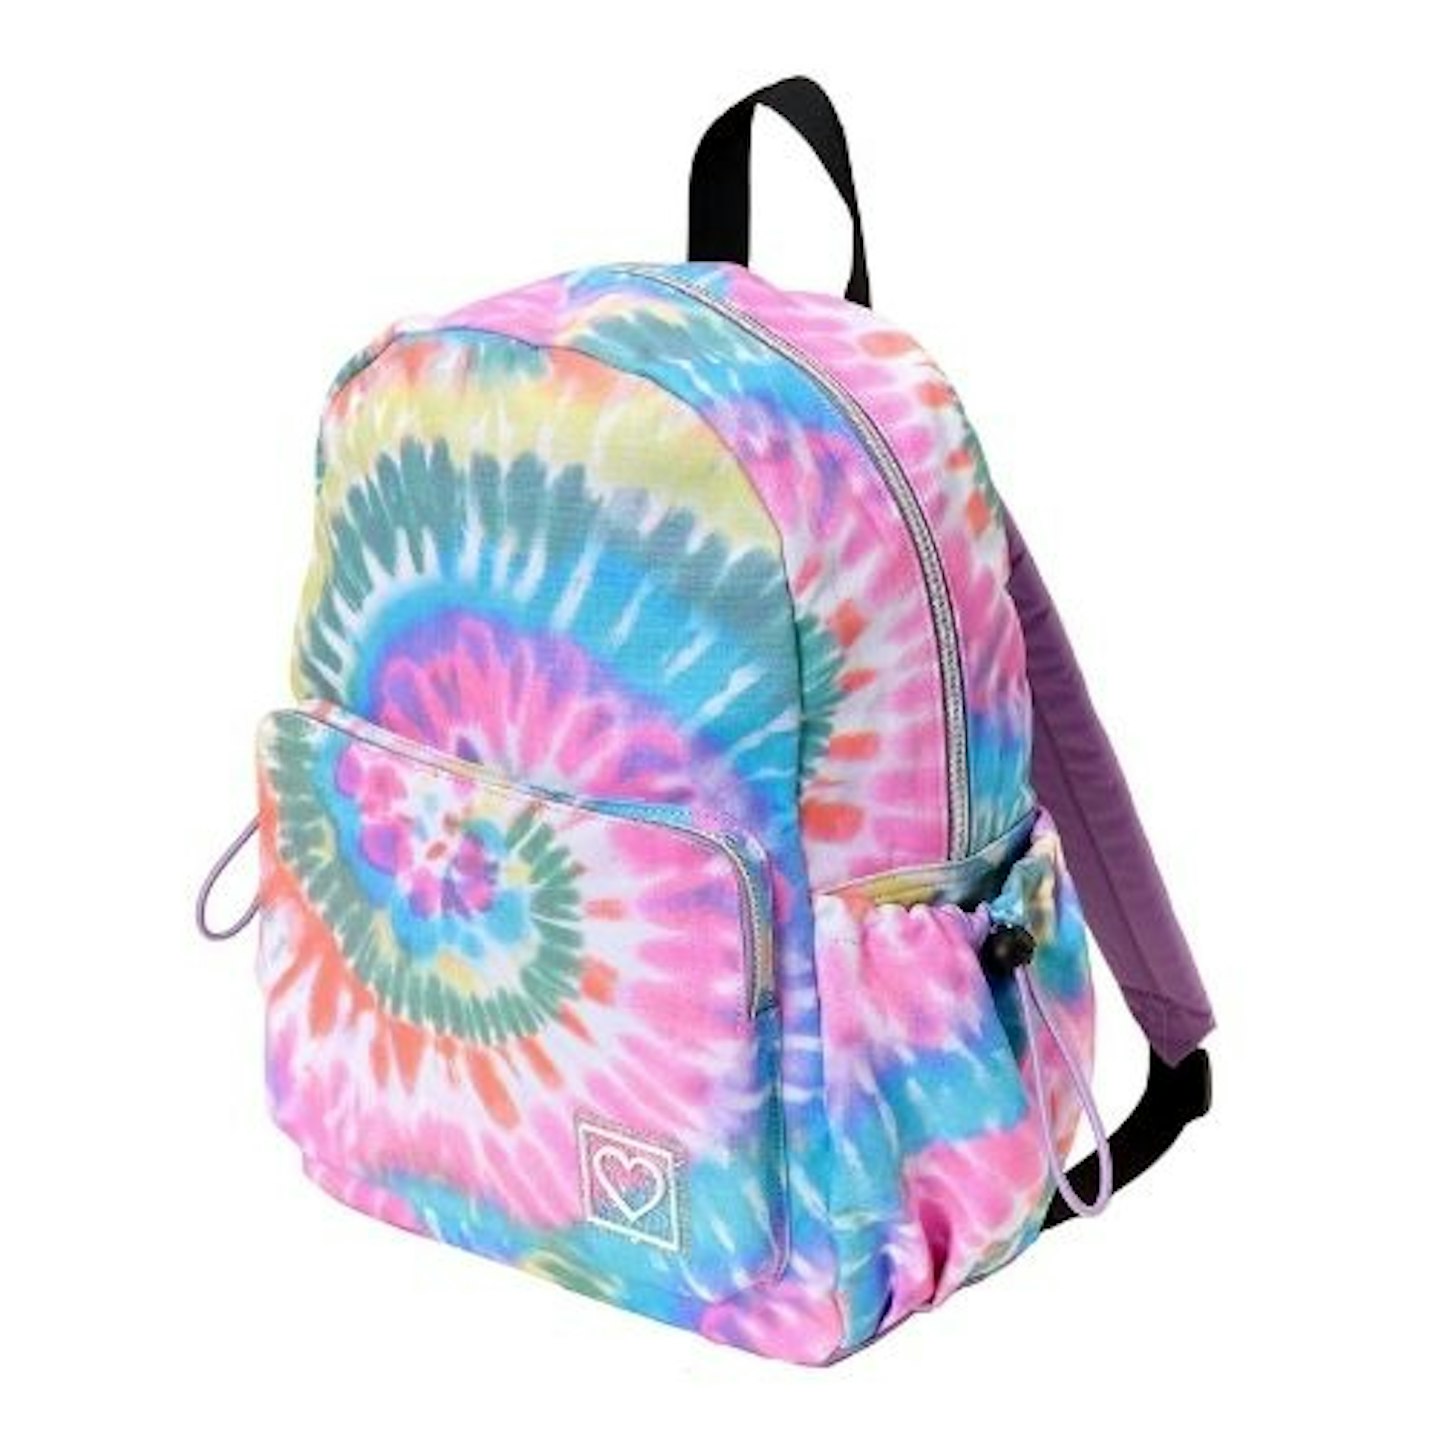 Rainbow Tie Dye Large Backpack